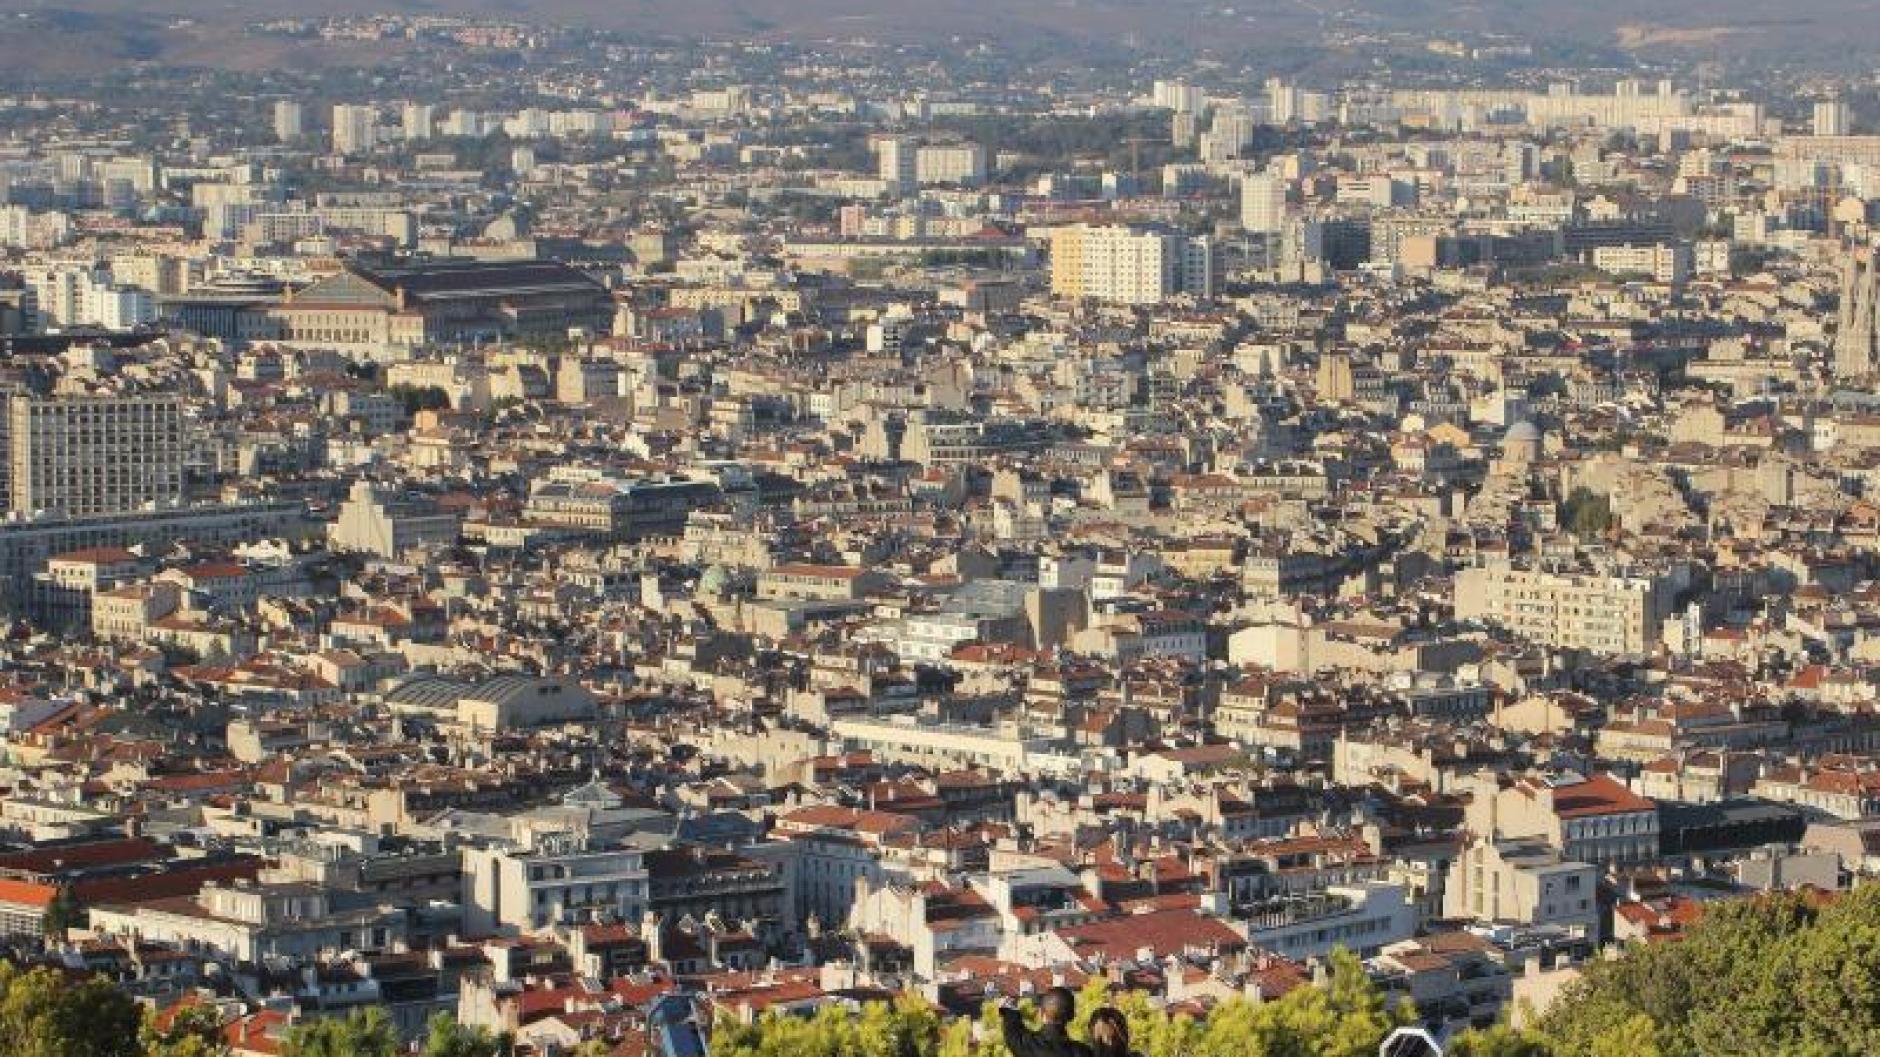 Frankreich: US-Touristinnen in Marseille mit Säure angegriffen